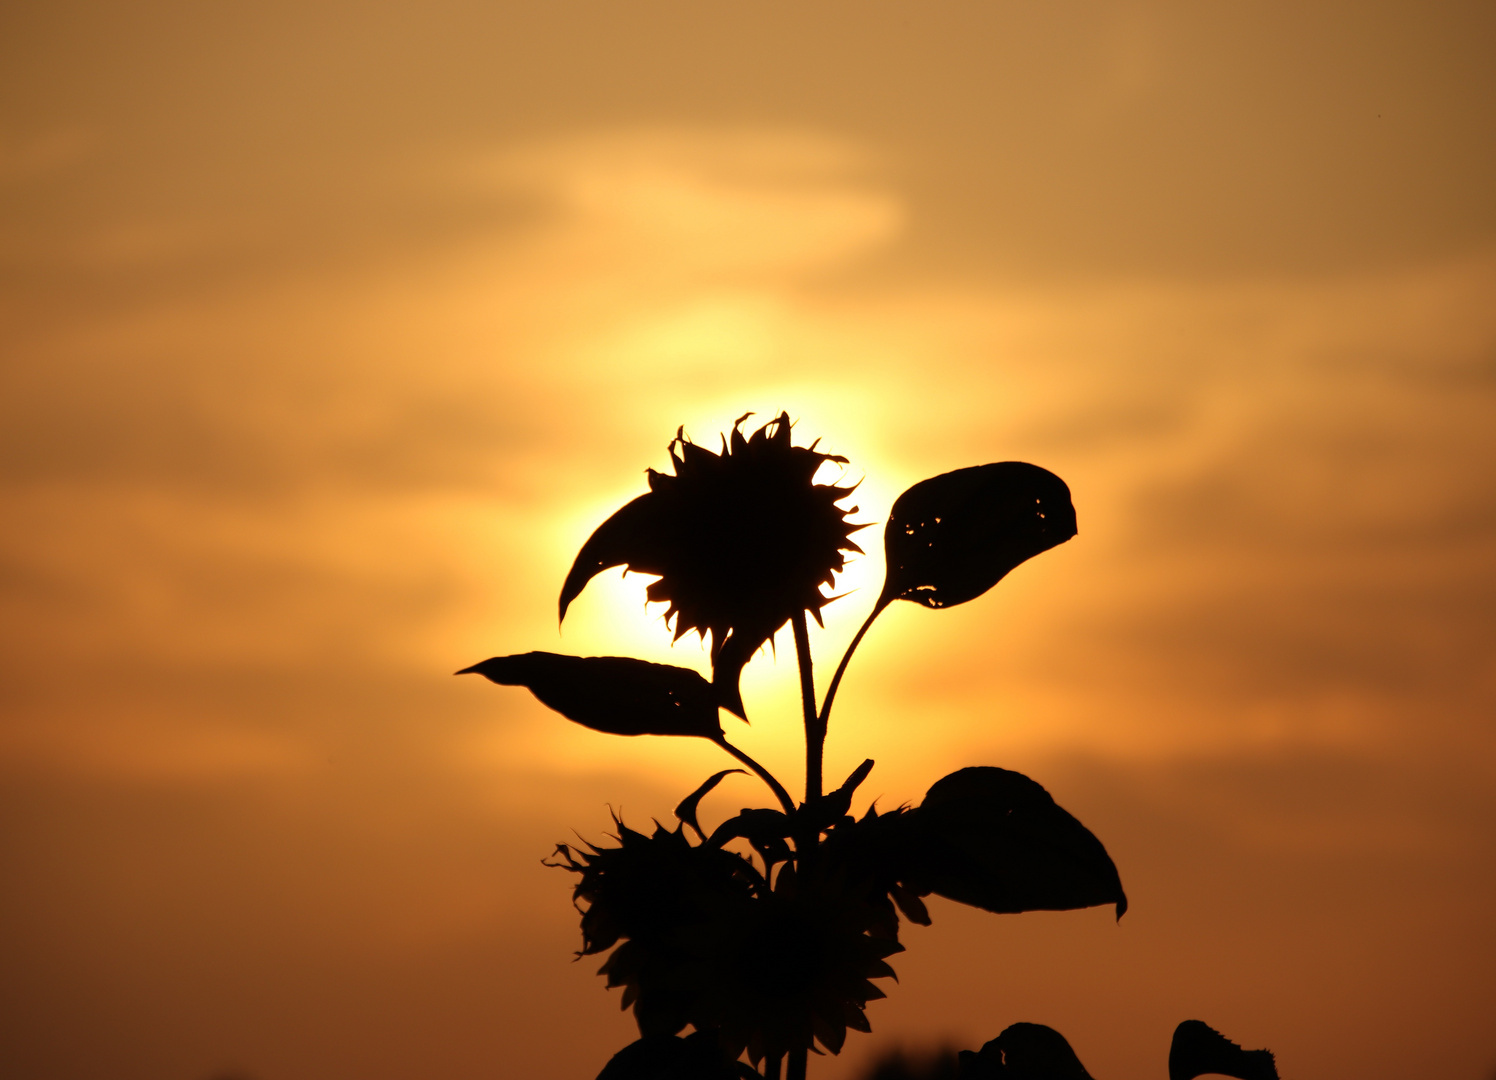 Sonnenblume.. in mehrfacher Hinsicht